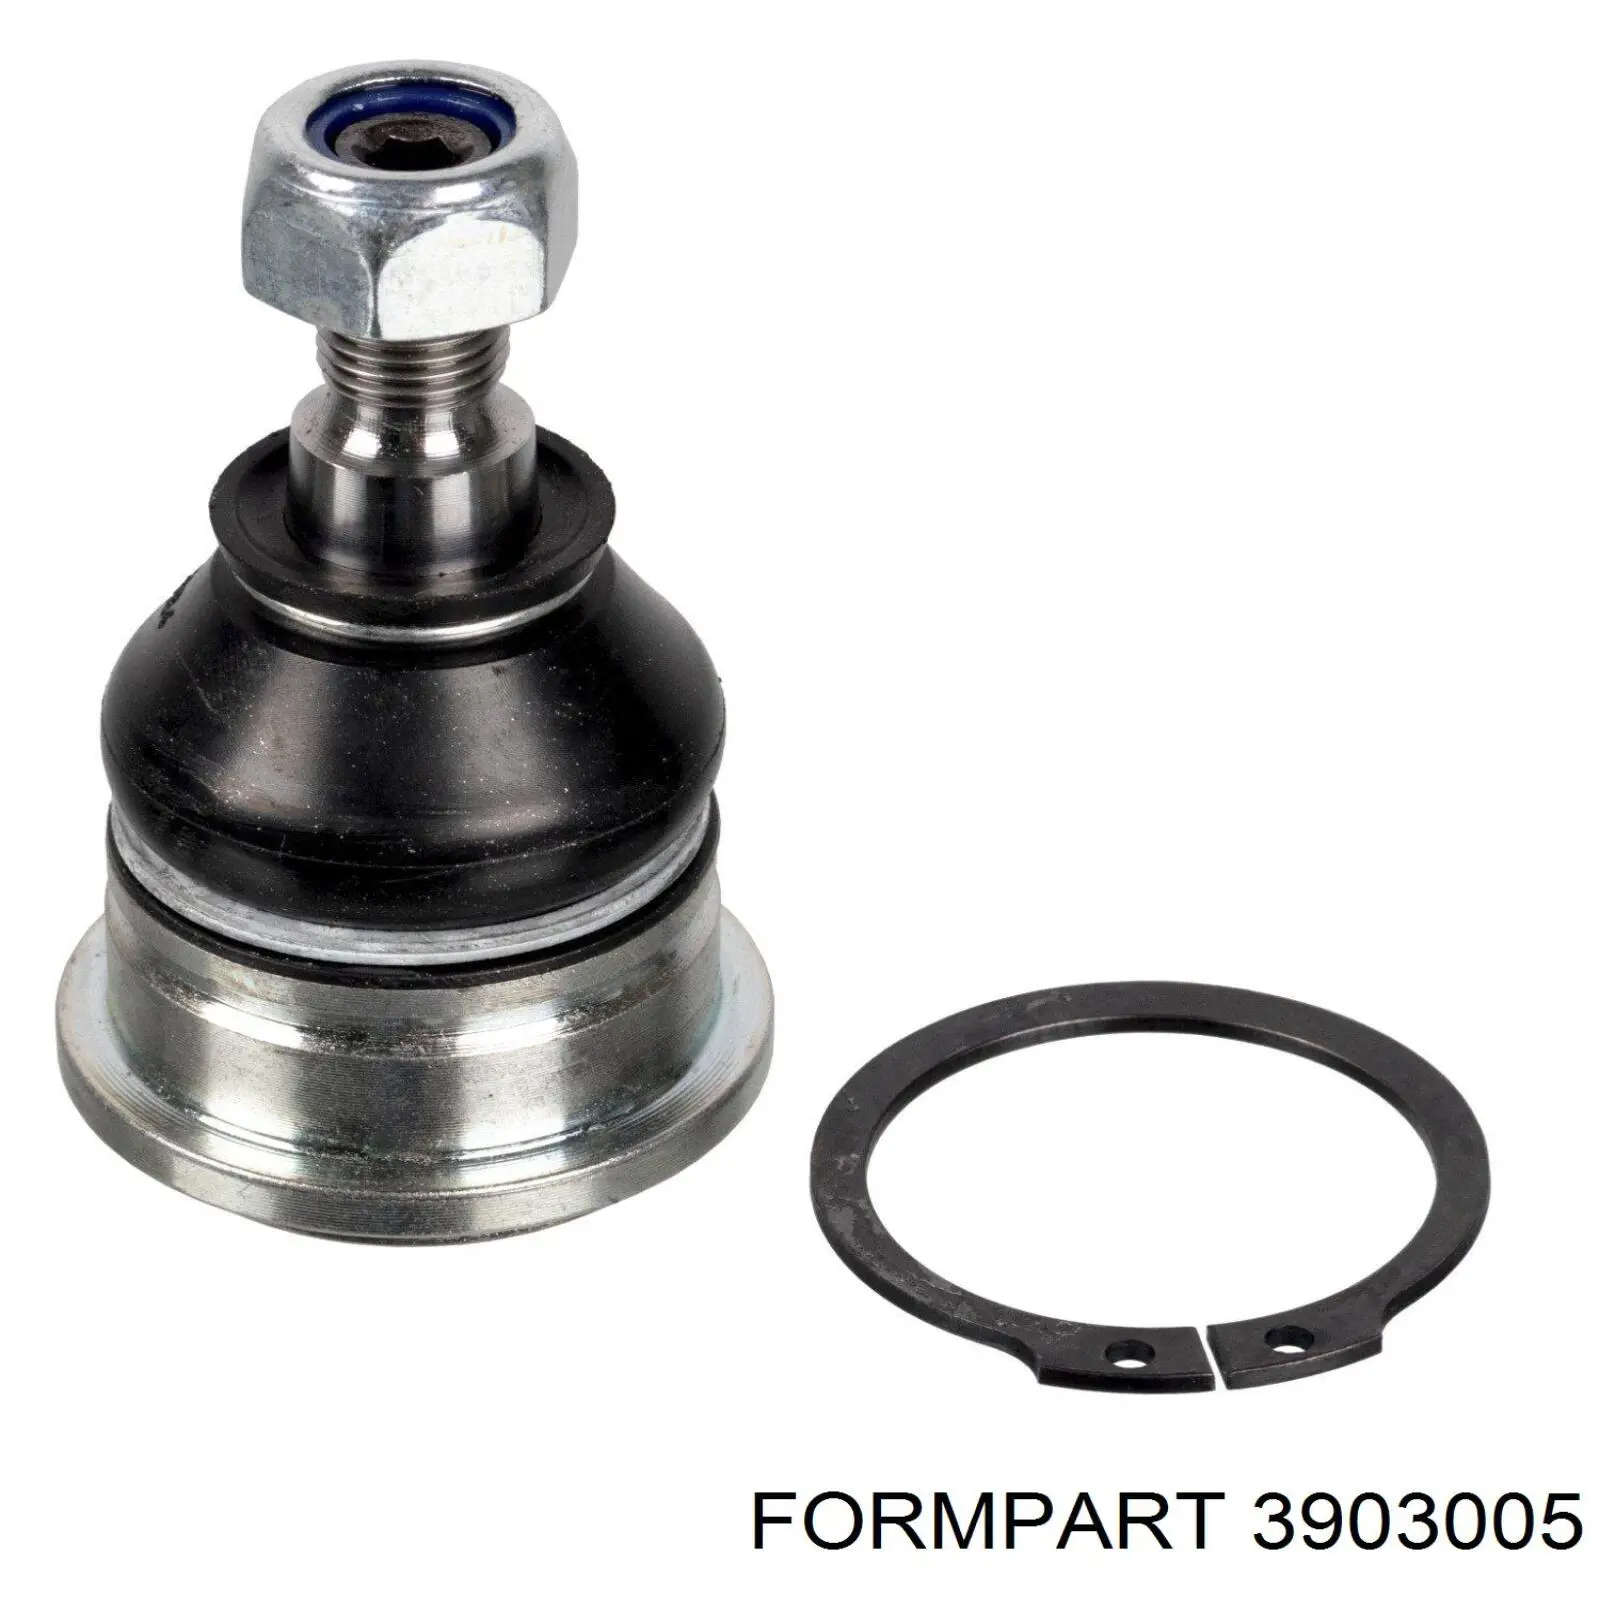 3903005 Formpart/Otoform rótula de suspensión inferior